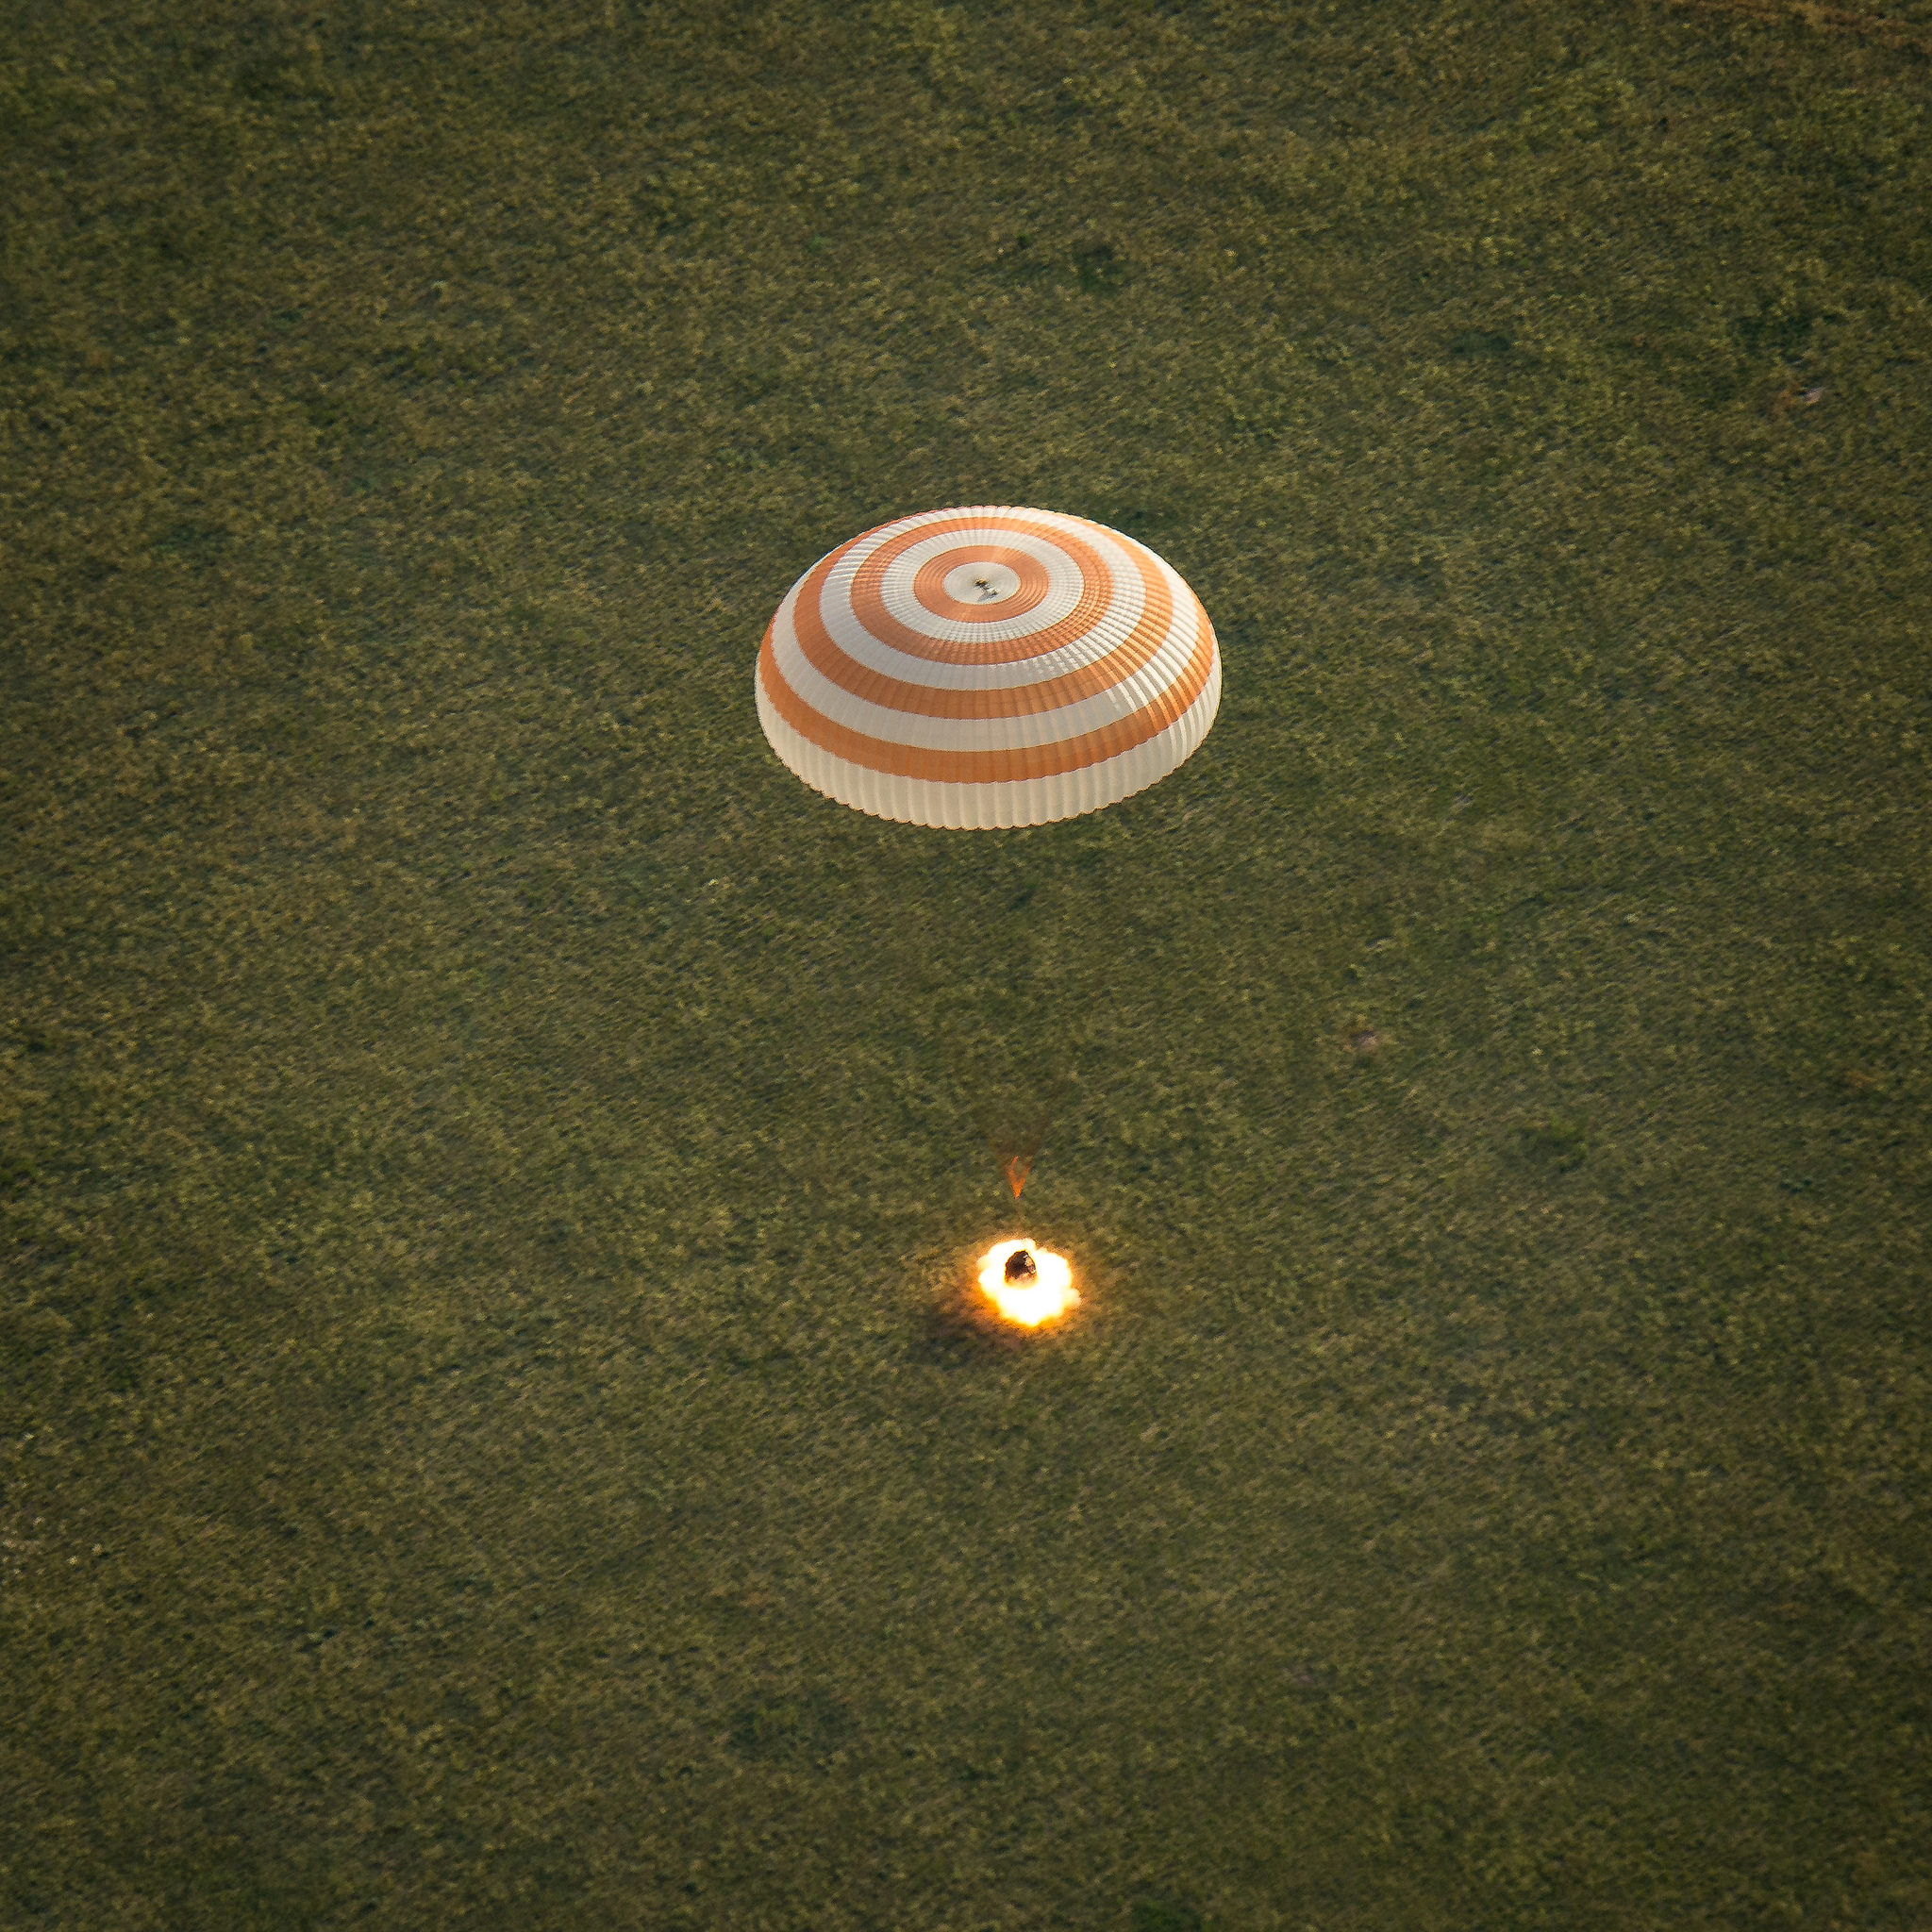 Environ une seconde et à 70cm au-dessus du sol, le Soyouz TMA-15M allume ses rétrofusées pour amortir le choc (Crédits : NASA/Bill Ingalls)